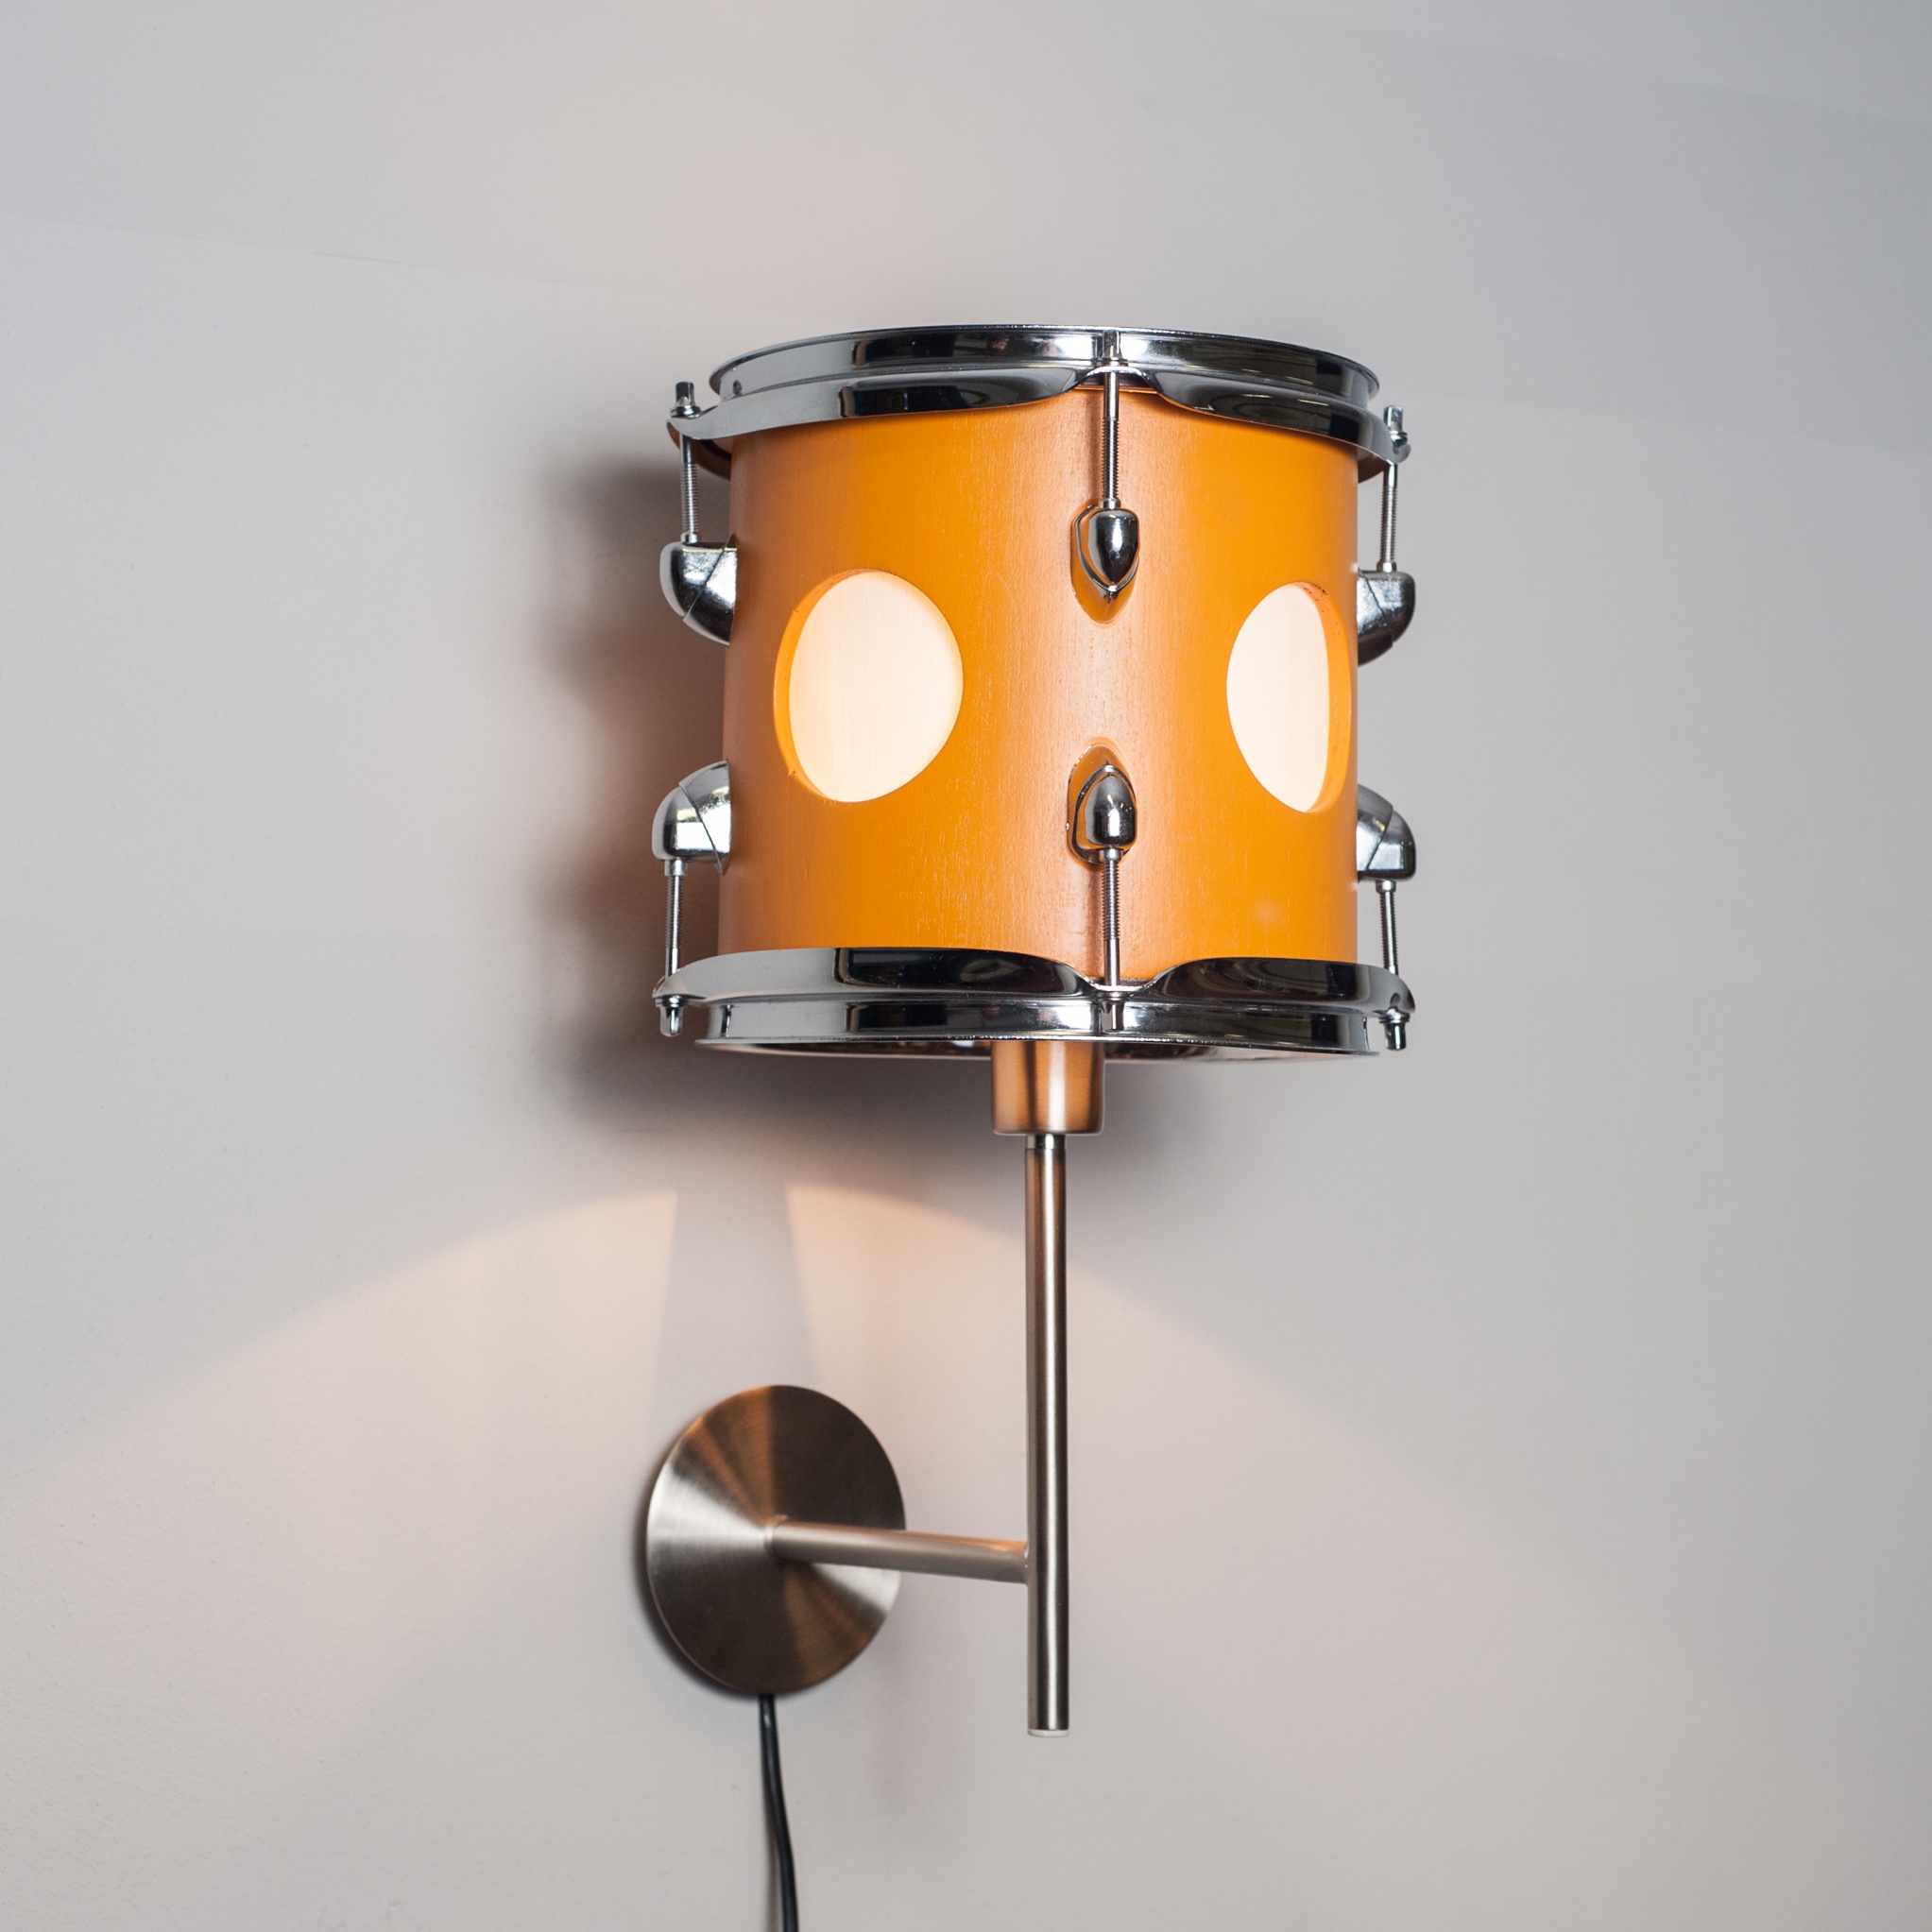 wandlamp gemaakt van tom-tom (drum)